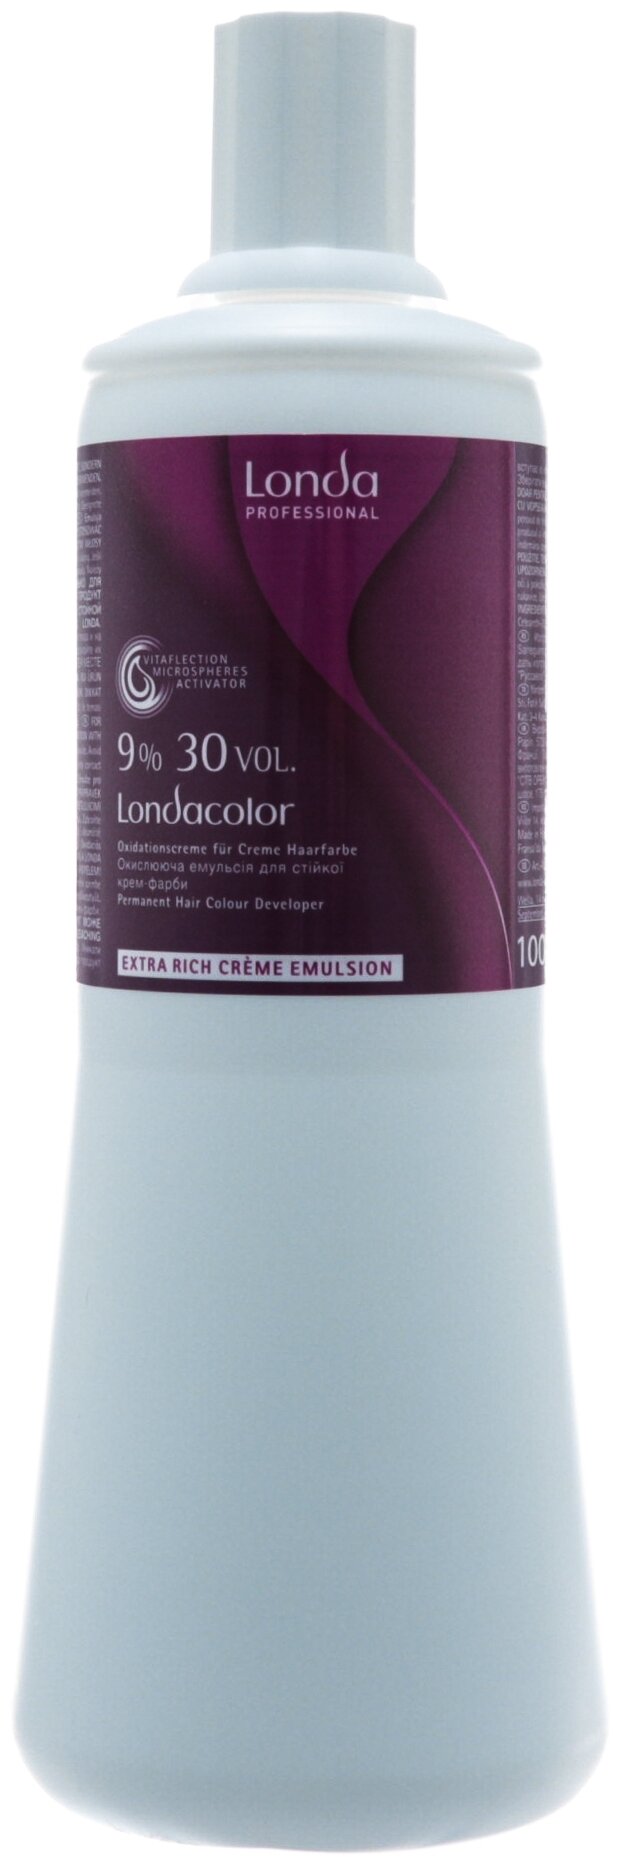 Londa Professional Londacolor Окислительная эмульсия для стойкой крем-краски Extra Rich Creme Emulsion 9 %, 1000 мл